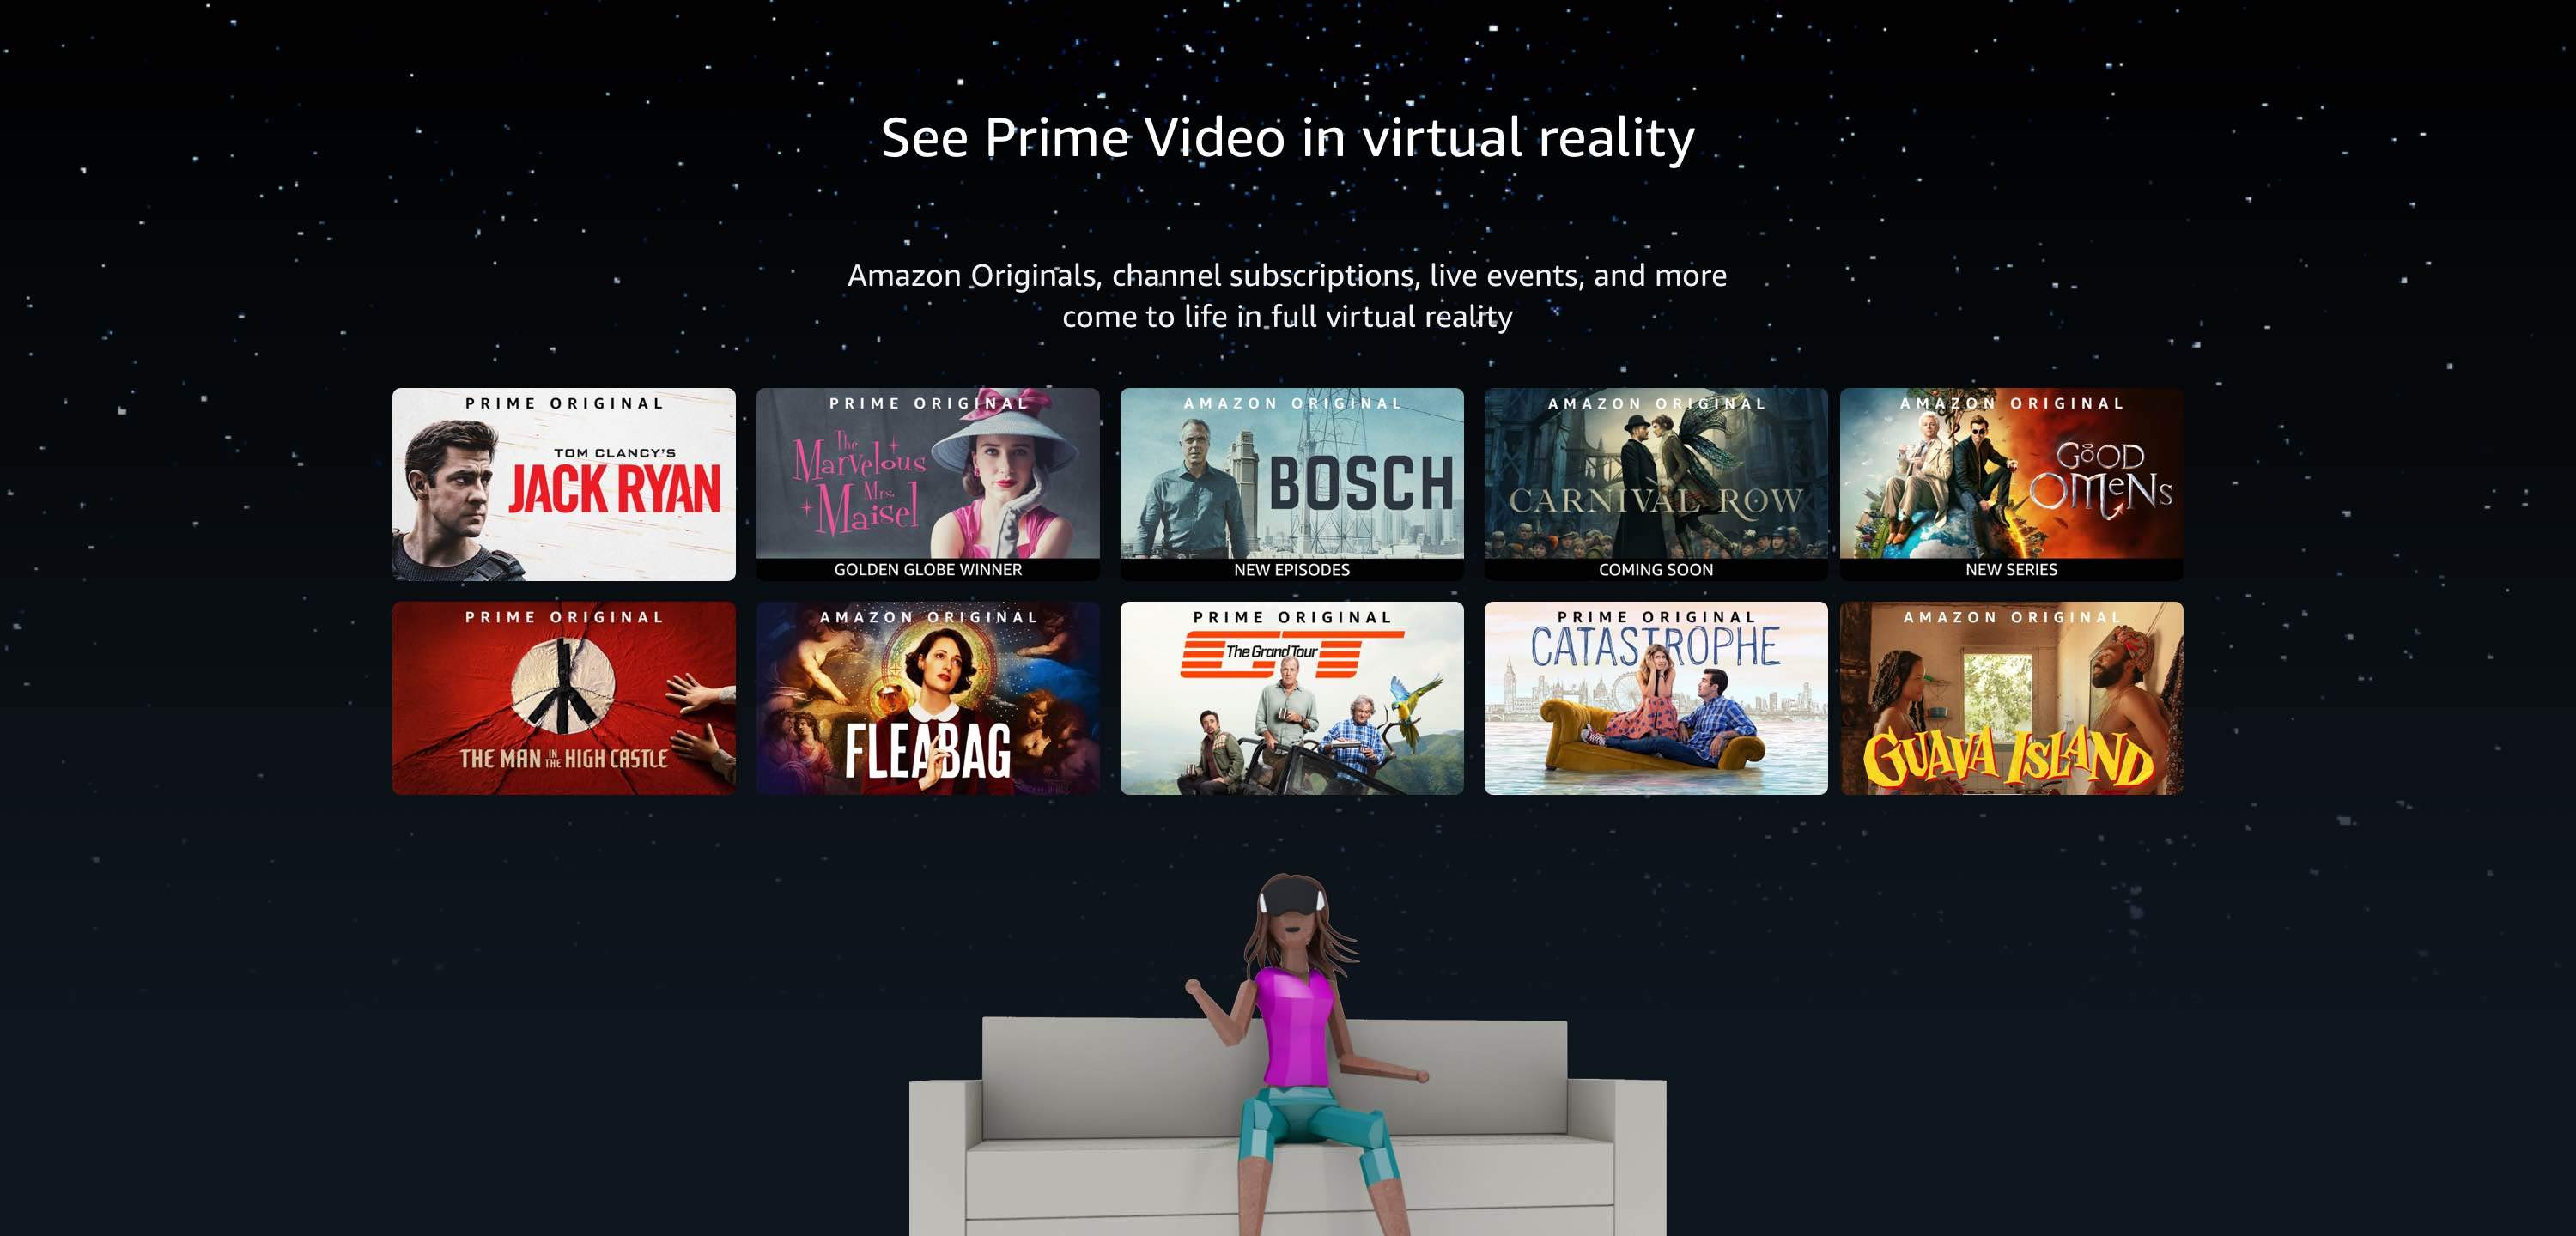 Amazon Prime Video VR service